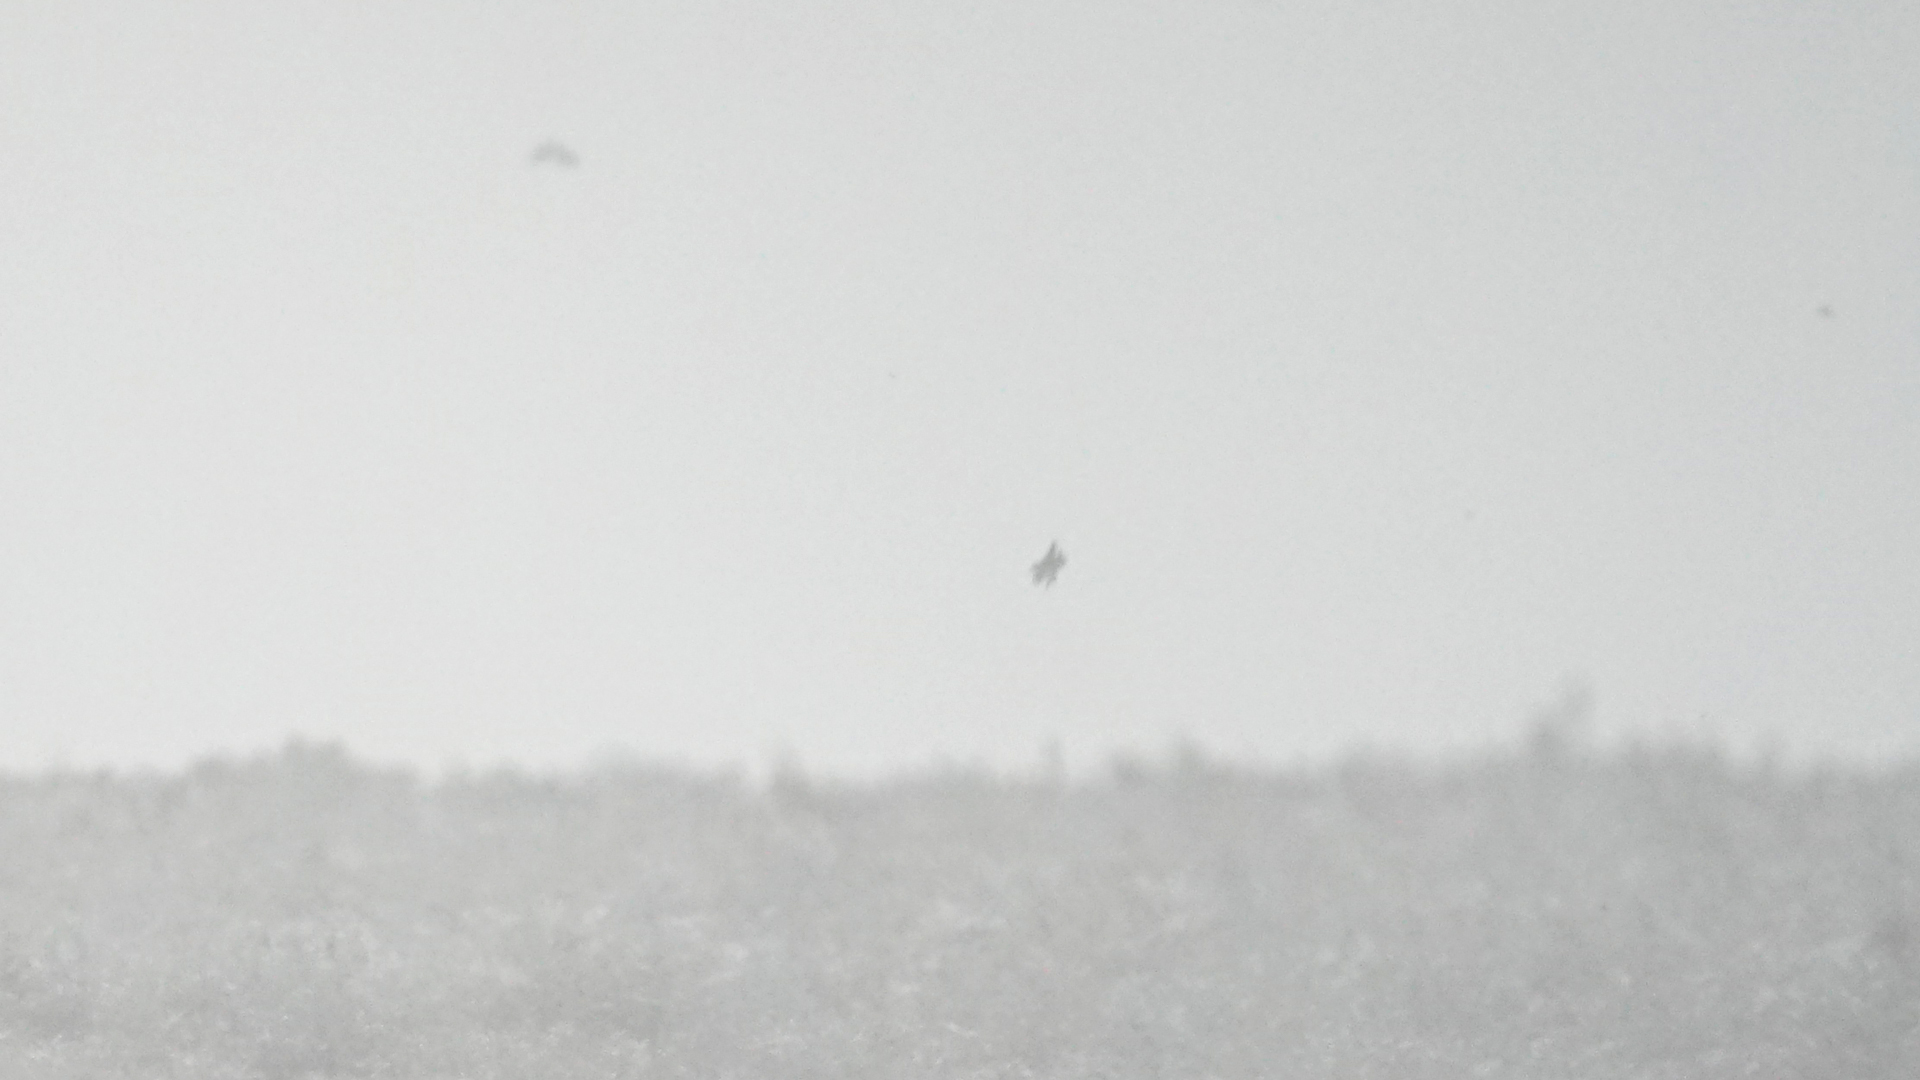 Fotostrecke Winter Abbildung 90: Touchdown einer Schneeflocke